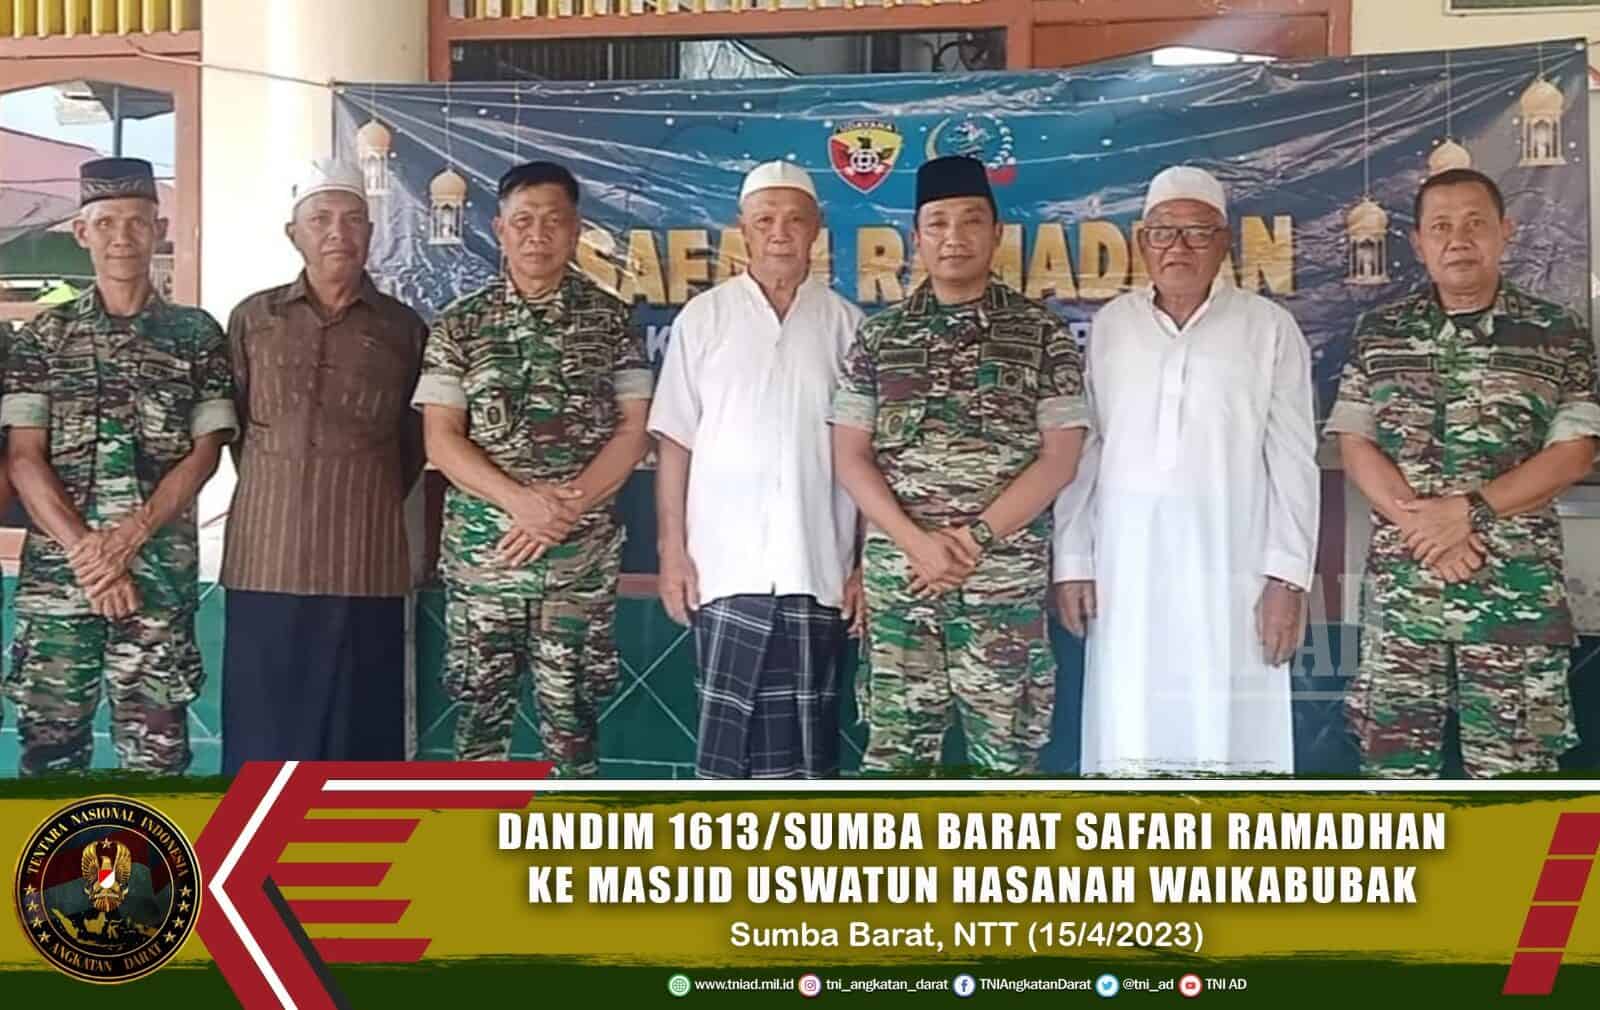 Dandim 1613/Sumba Barat Safari Ramadhan ke Masjid Uswatun Hasanah Waikabubak